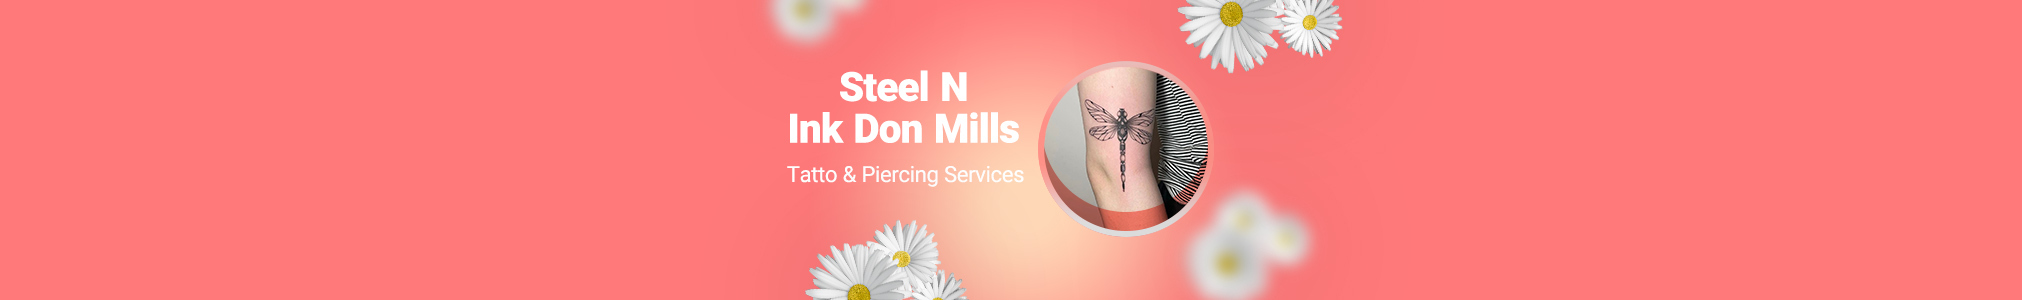 Steel N Ink Don Mills